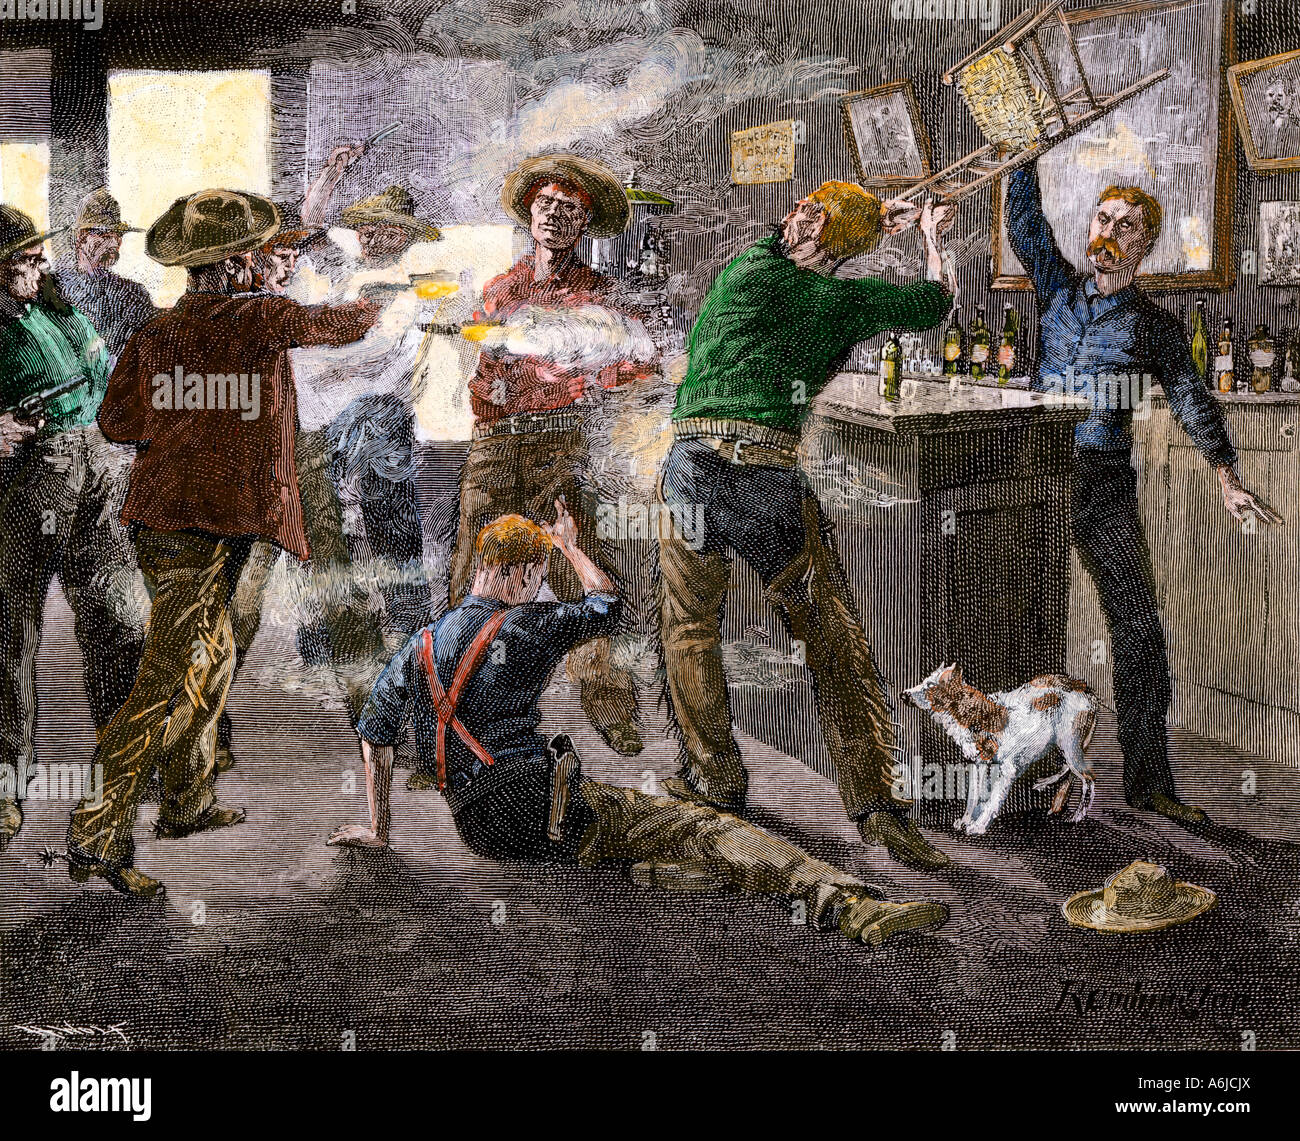 Saloon brawl en una ciudad ganadera occidental a finales de 1800. Xilografía coloreada a mano de un Frederic Remington ilustración Foto de stock